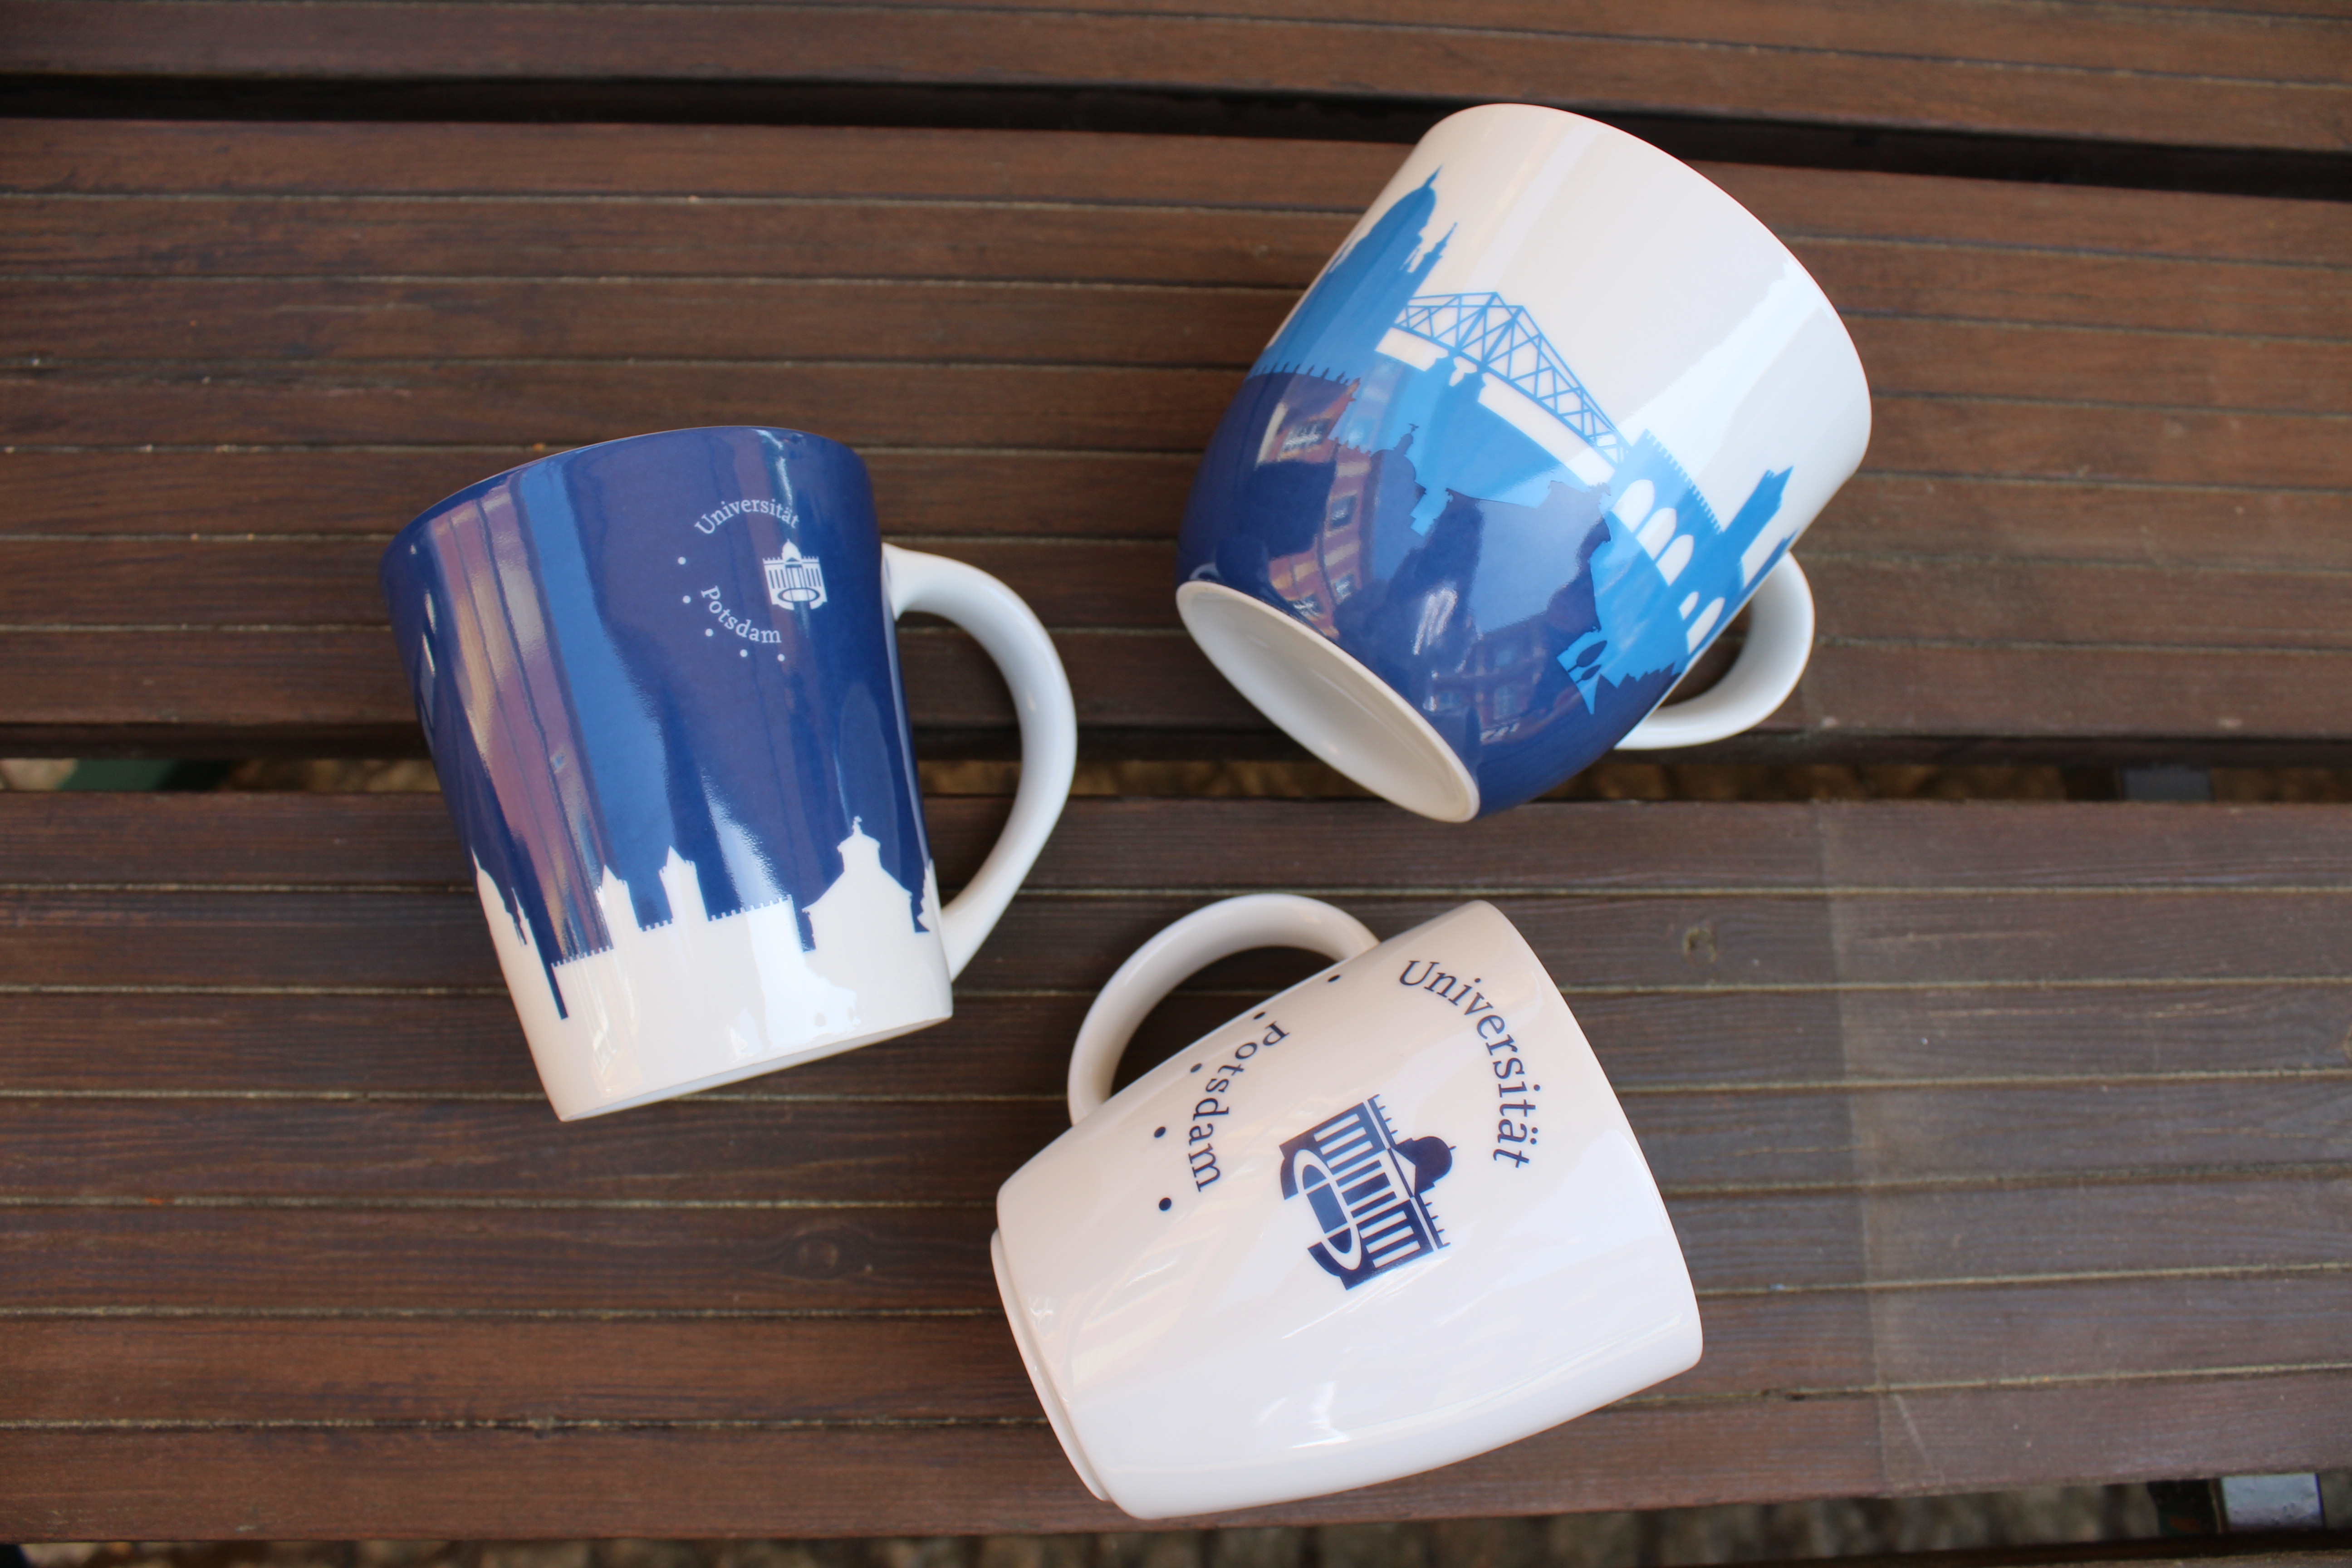 Jumbo Tasse, Tasse weiß, Pott blau. Abgebildet sind die 3 verschiedenen Tassen des Unishop Potsdams auf einer Holzunterlage.